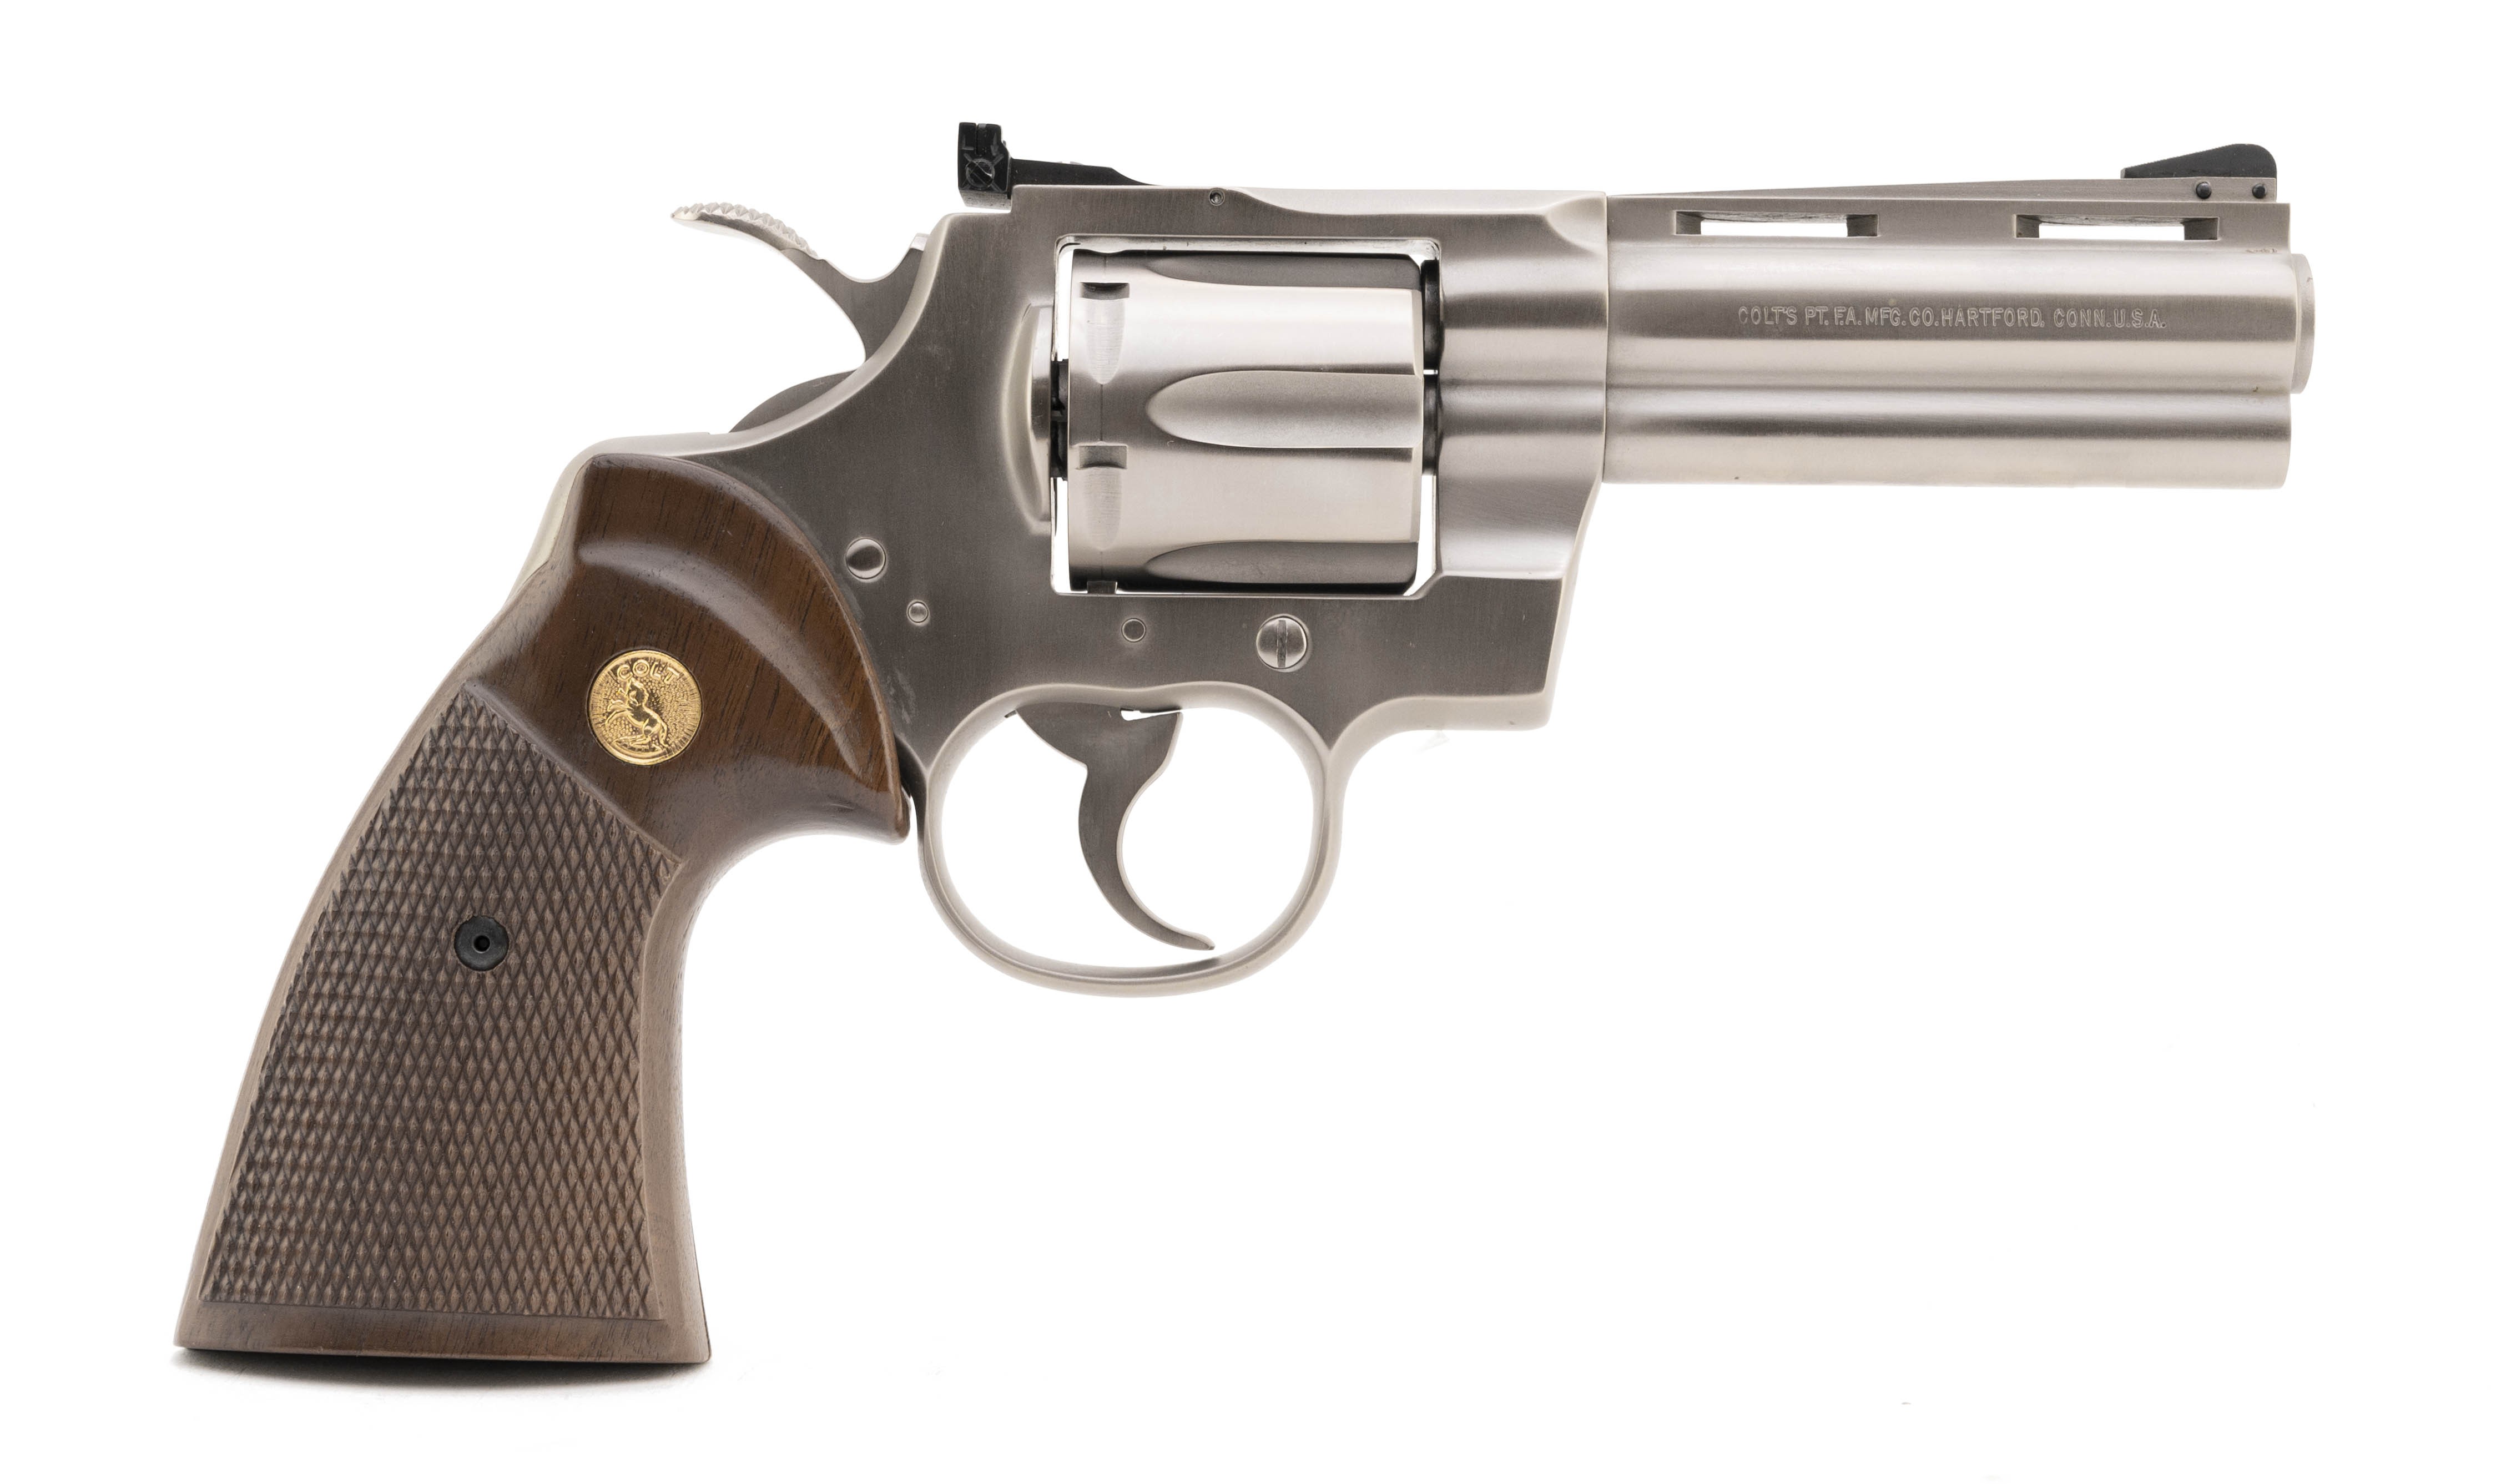 Colt Python Custom Shop .357 Magnum caliber revolver for sale.